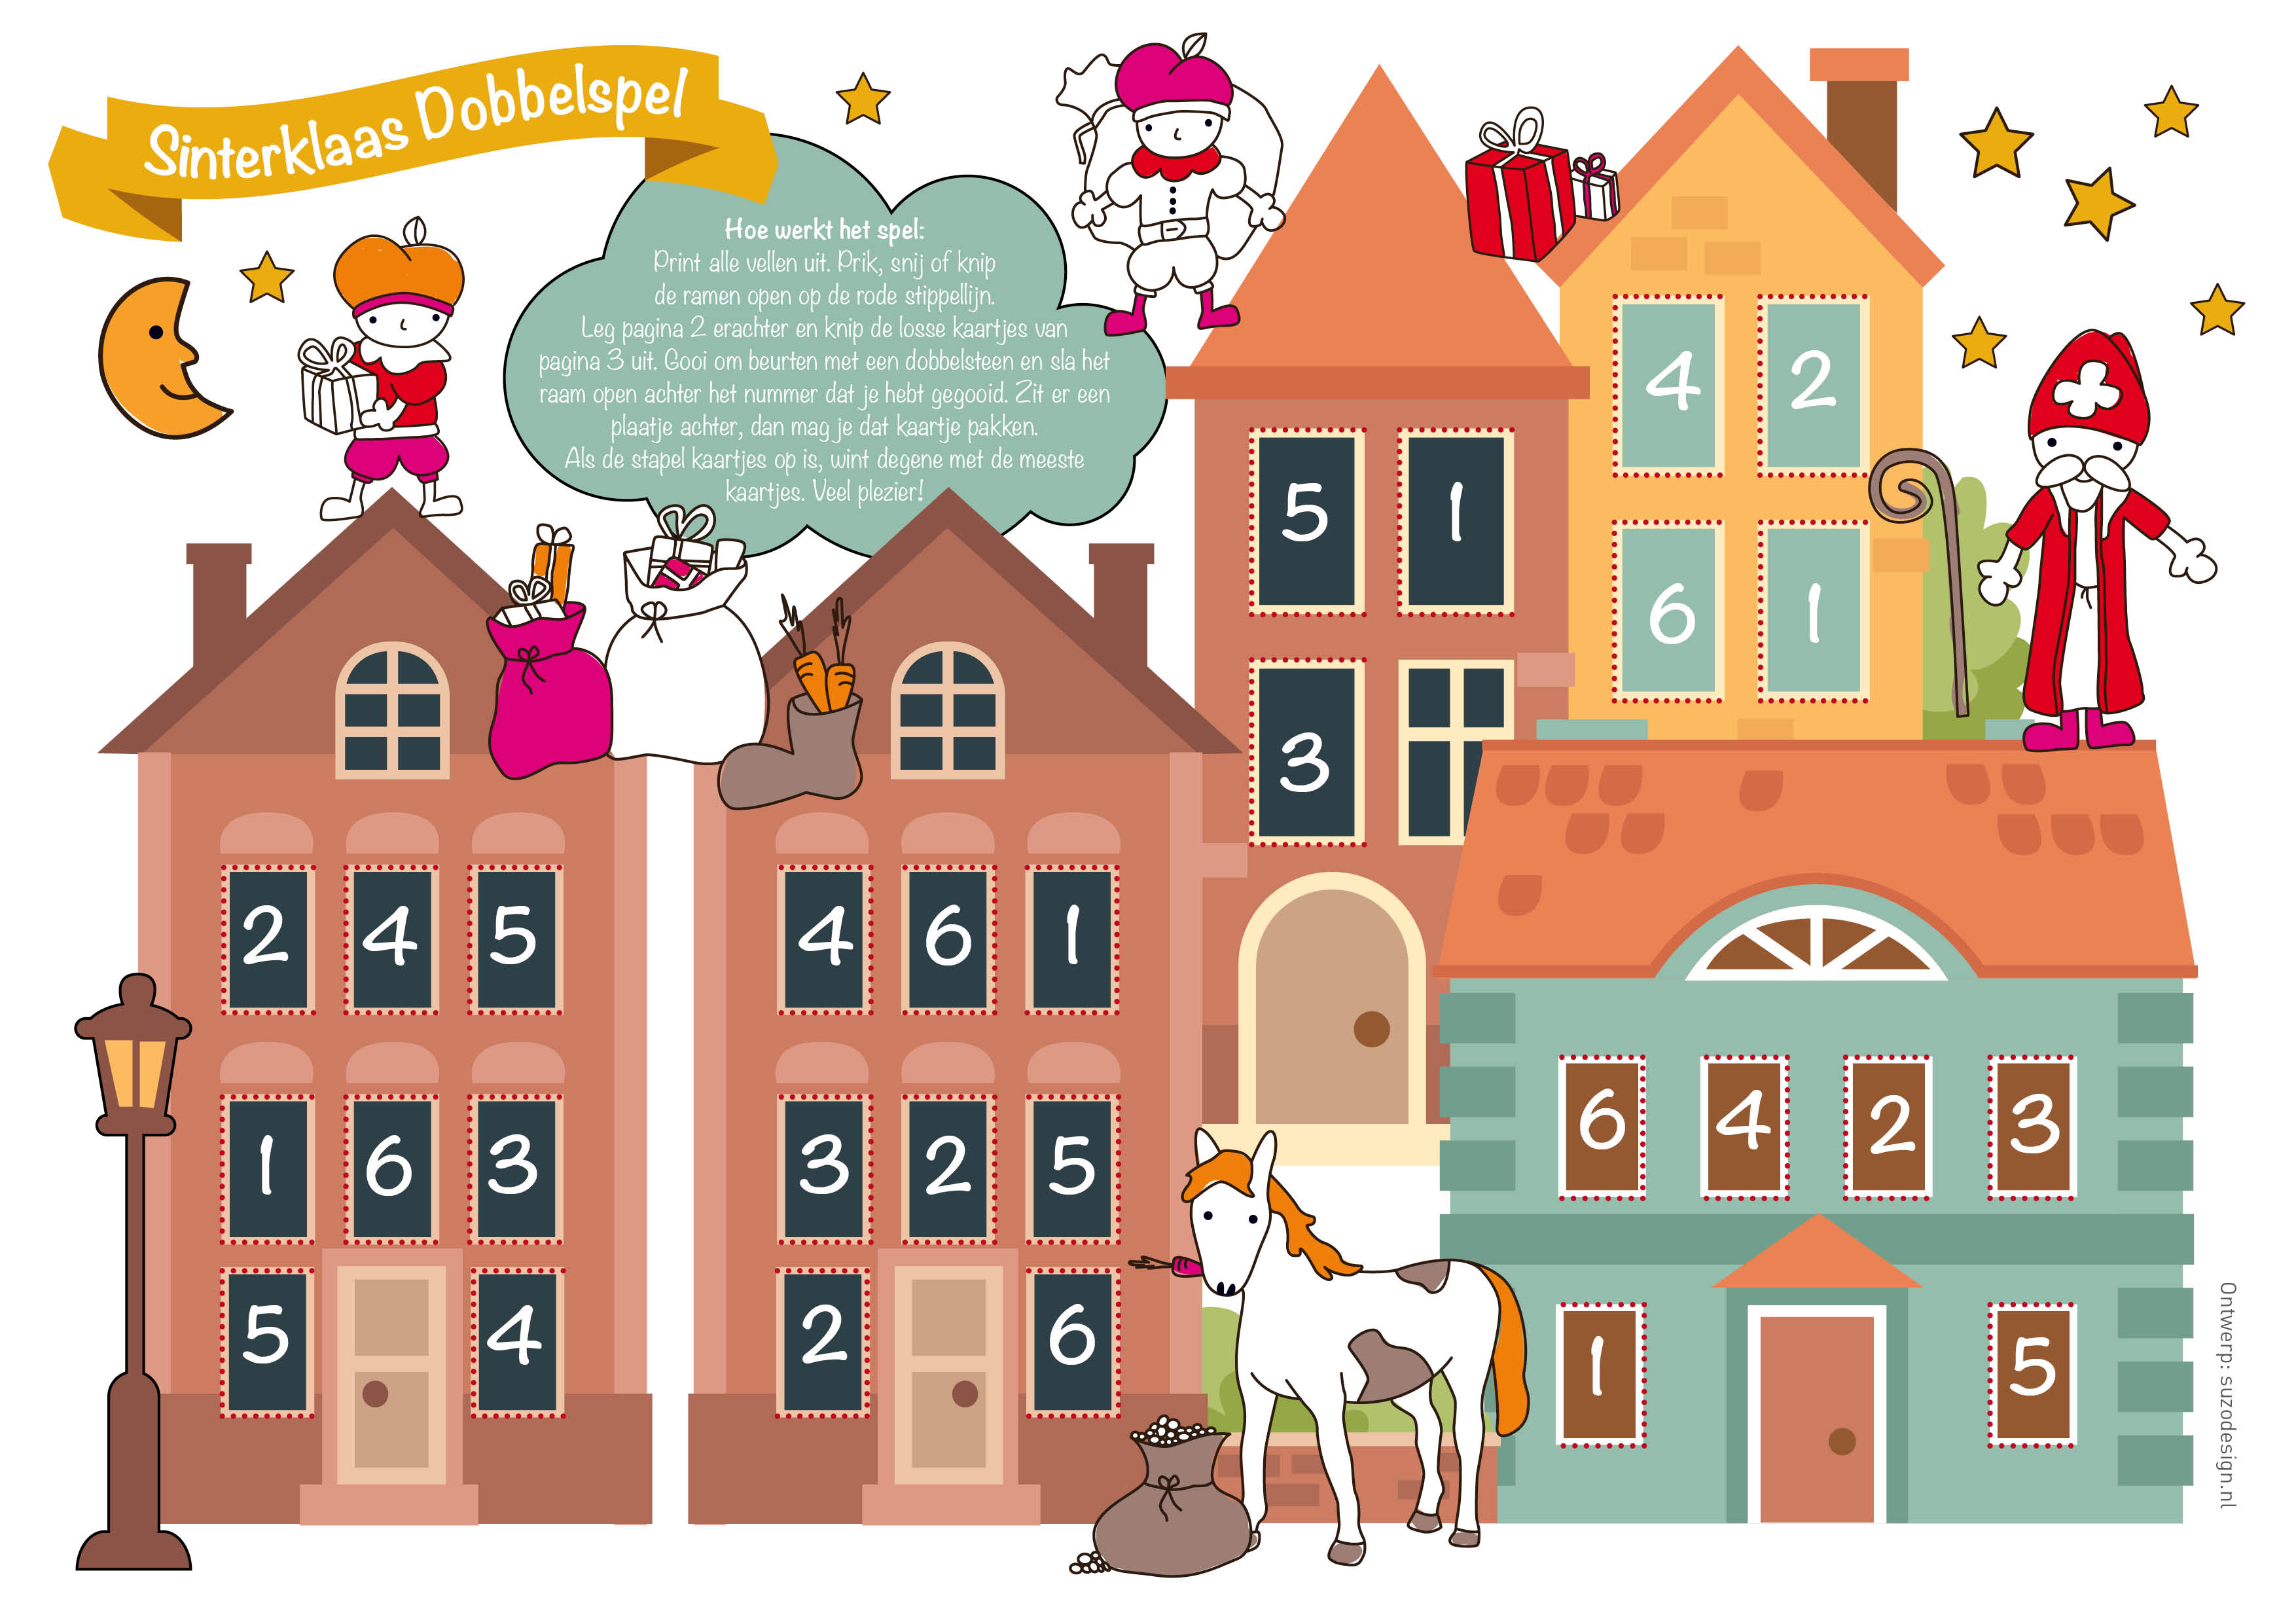 behuizing Schiereiland George Hanbury Gratis Printable Sinterklaasspel voor kinderen - Hip & Hot - blogazine